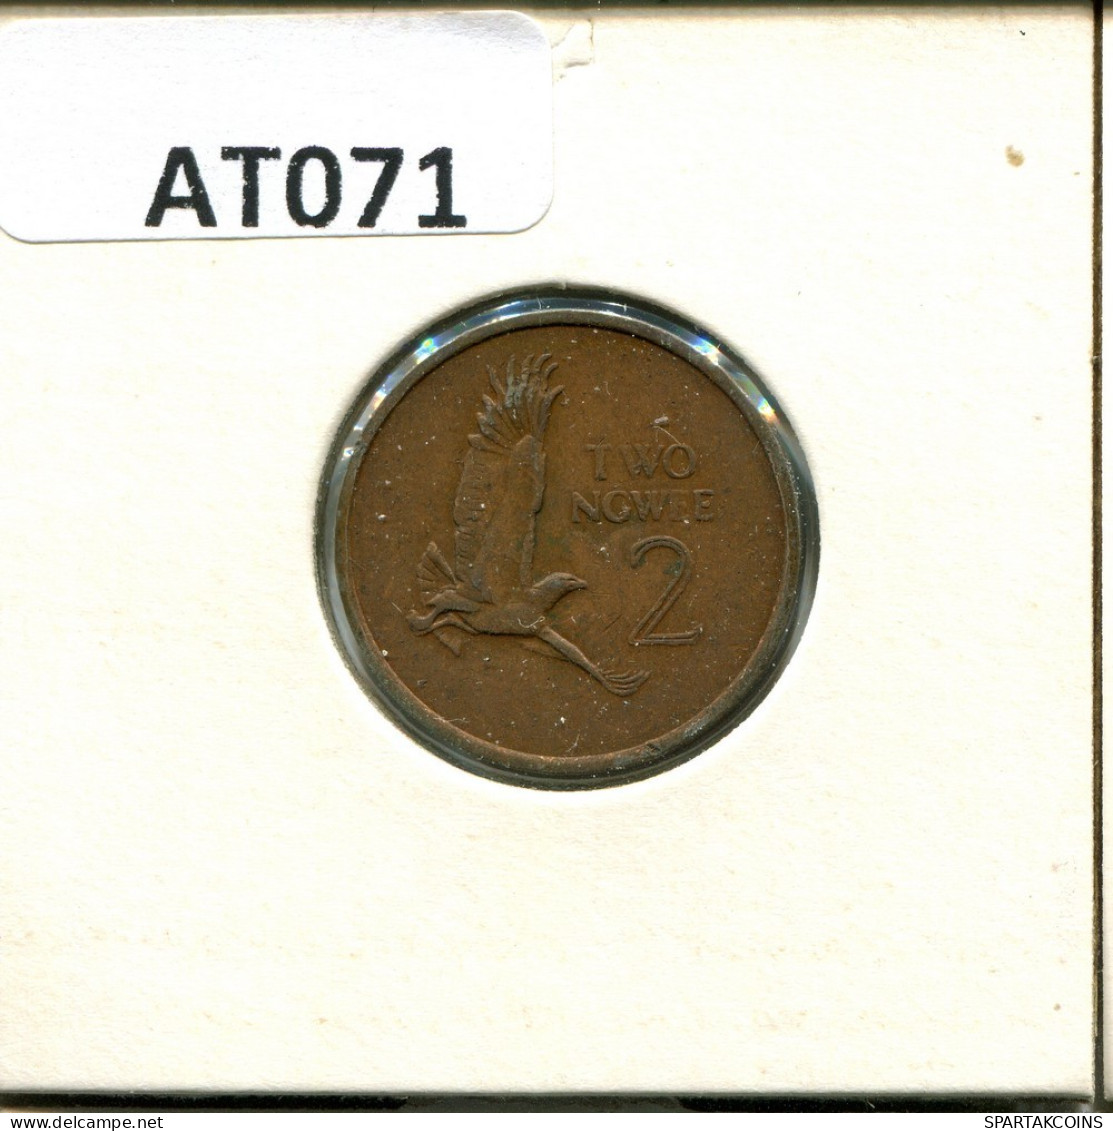 2 NGWEE 1982 ZAMBIA Coin #AT071.U.A - Sambia